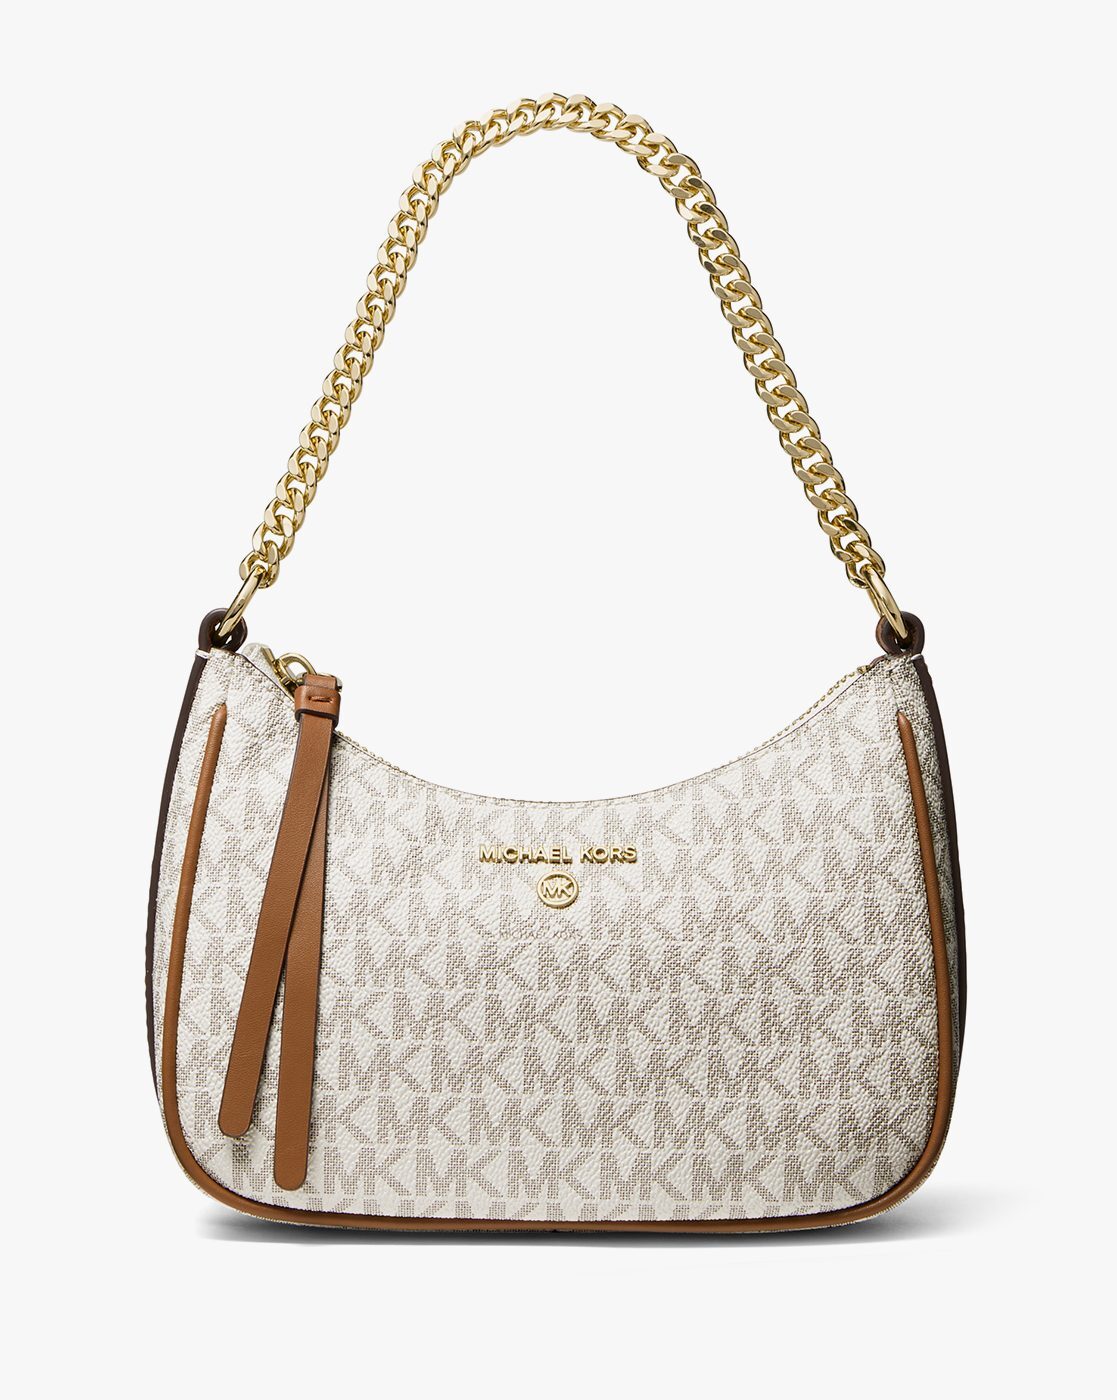 Michael Kors Camille Brown Saffiano Leather Shoulder Bag Handbag  eBay